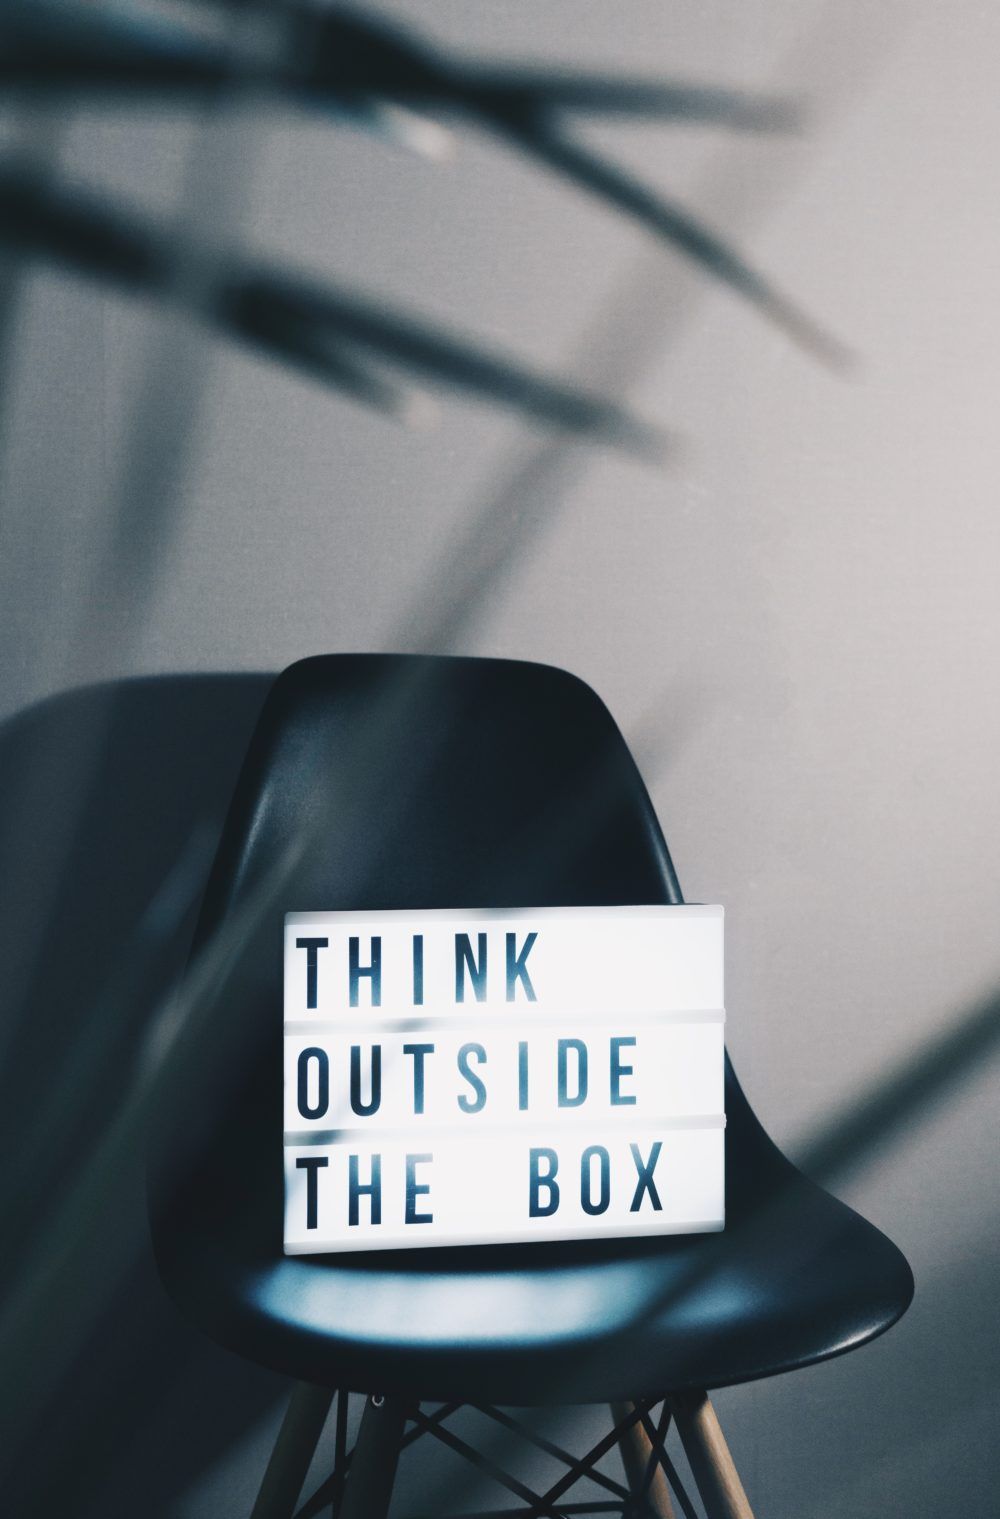 Placa com dizeres "Think Outside the box"